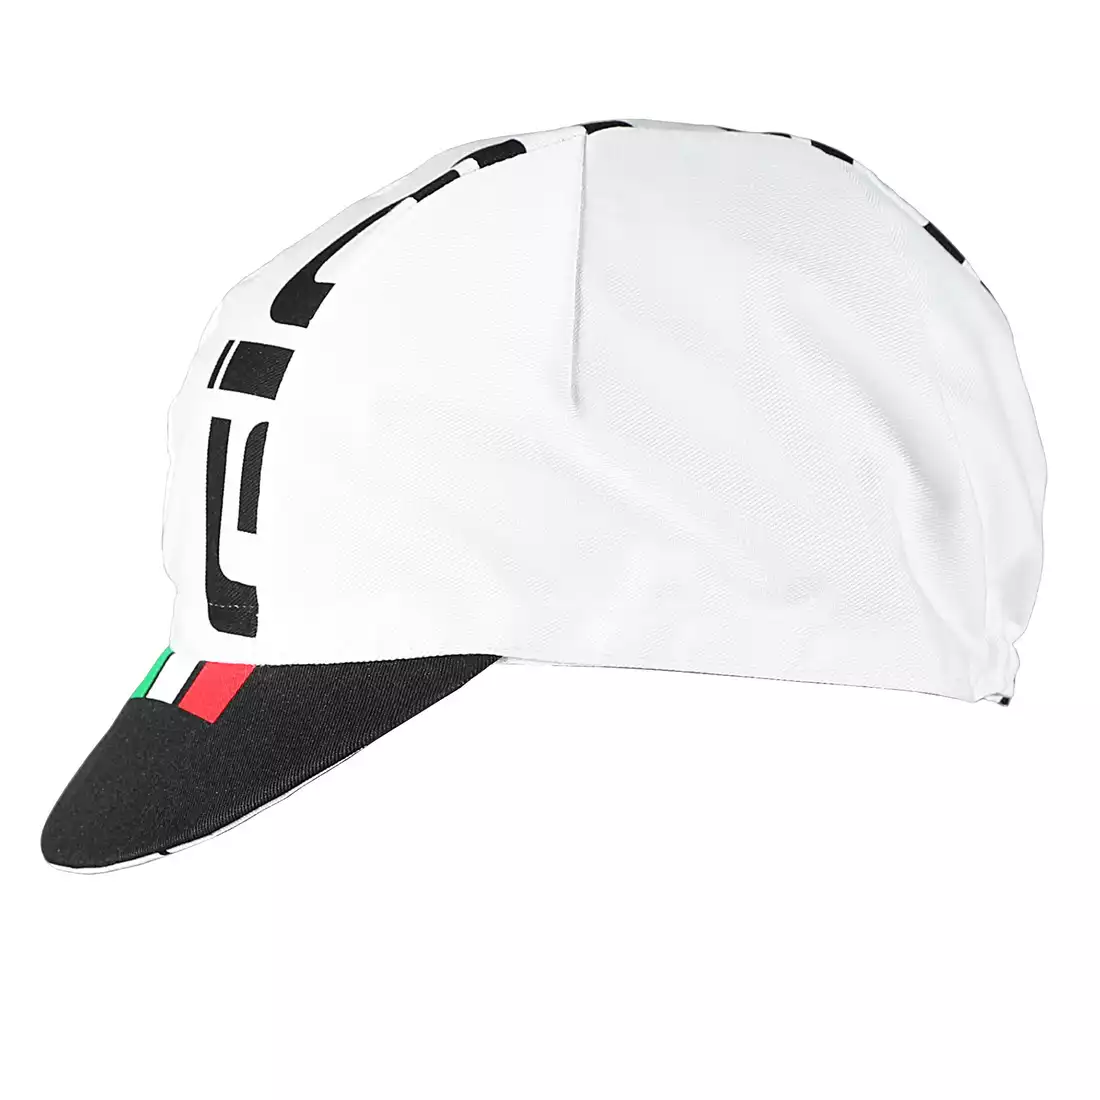 GIORDANA SS18 czapeczka kolarska - Giordana Logo - White/Black/Italia  GICS18-COCA-GIOR-WTBK one size